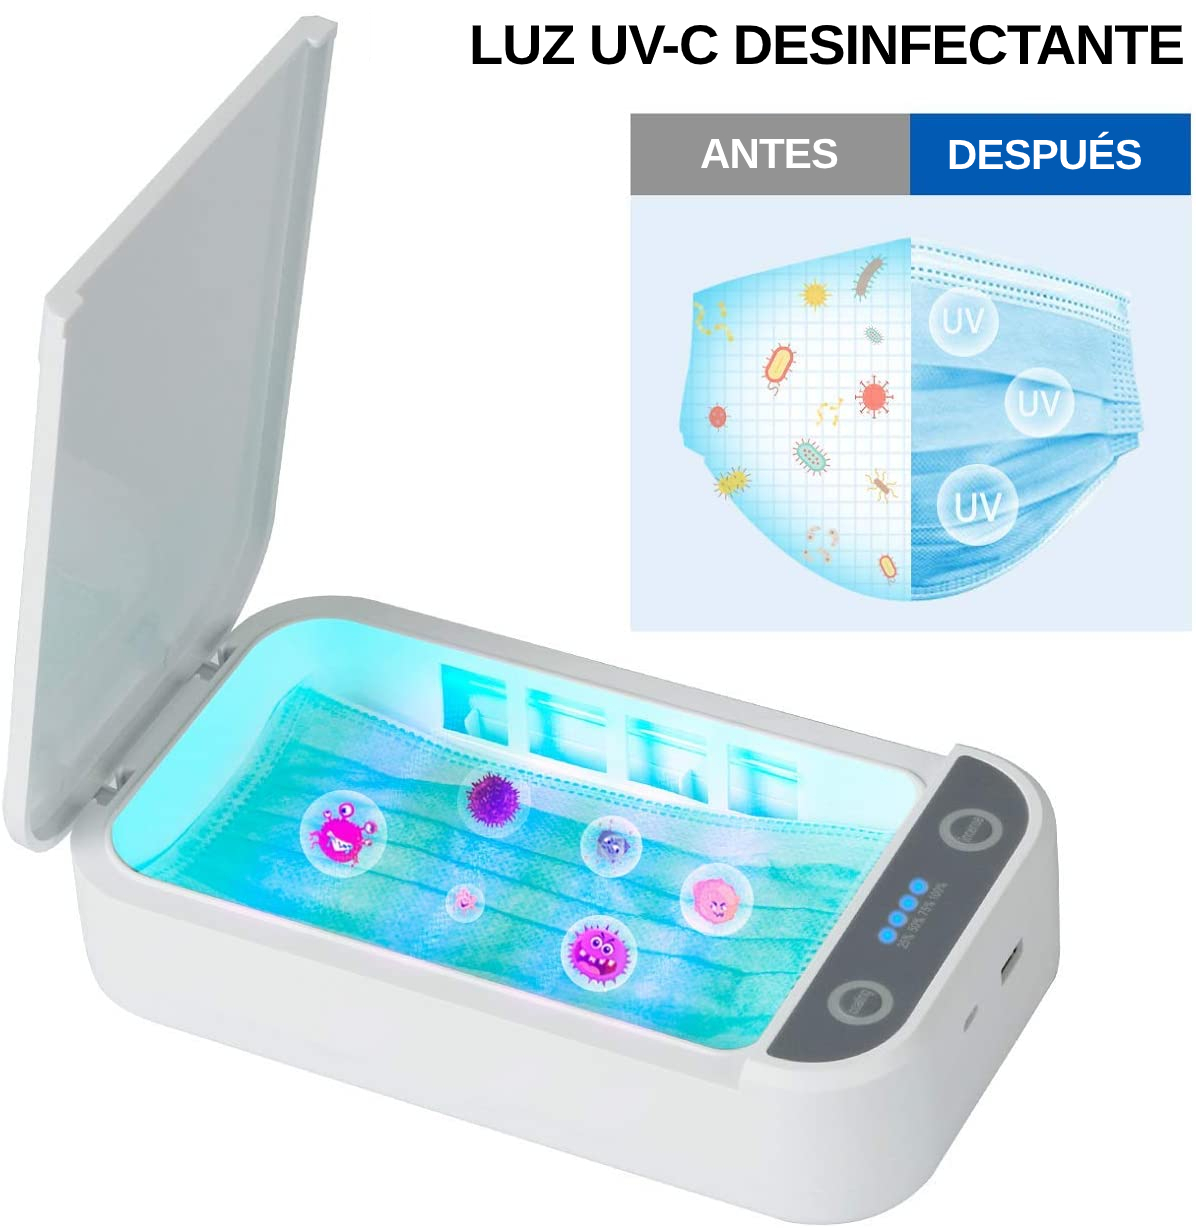 Mixnon Esterilizador UV para teléfono móvil caja de desinfección multifuncional UV y ozono,barra desinfectante extraíble,caja desinfectante de ozono,para teléfono móvil,herramientas de maquillaje